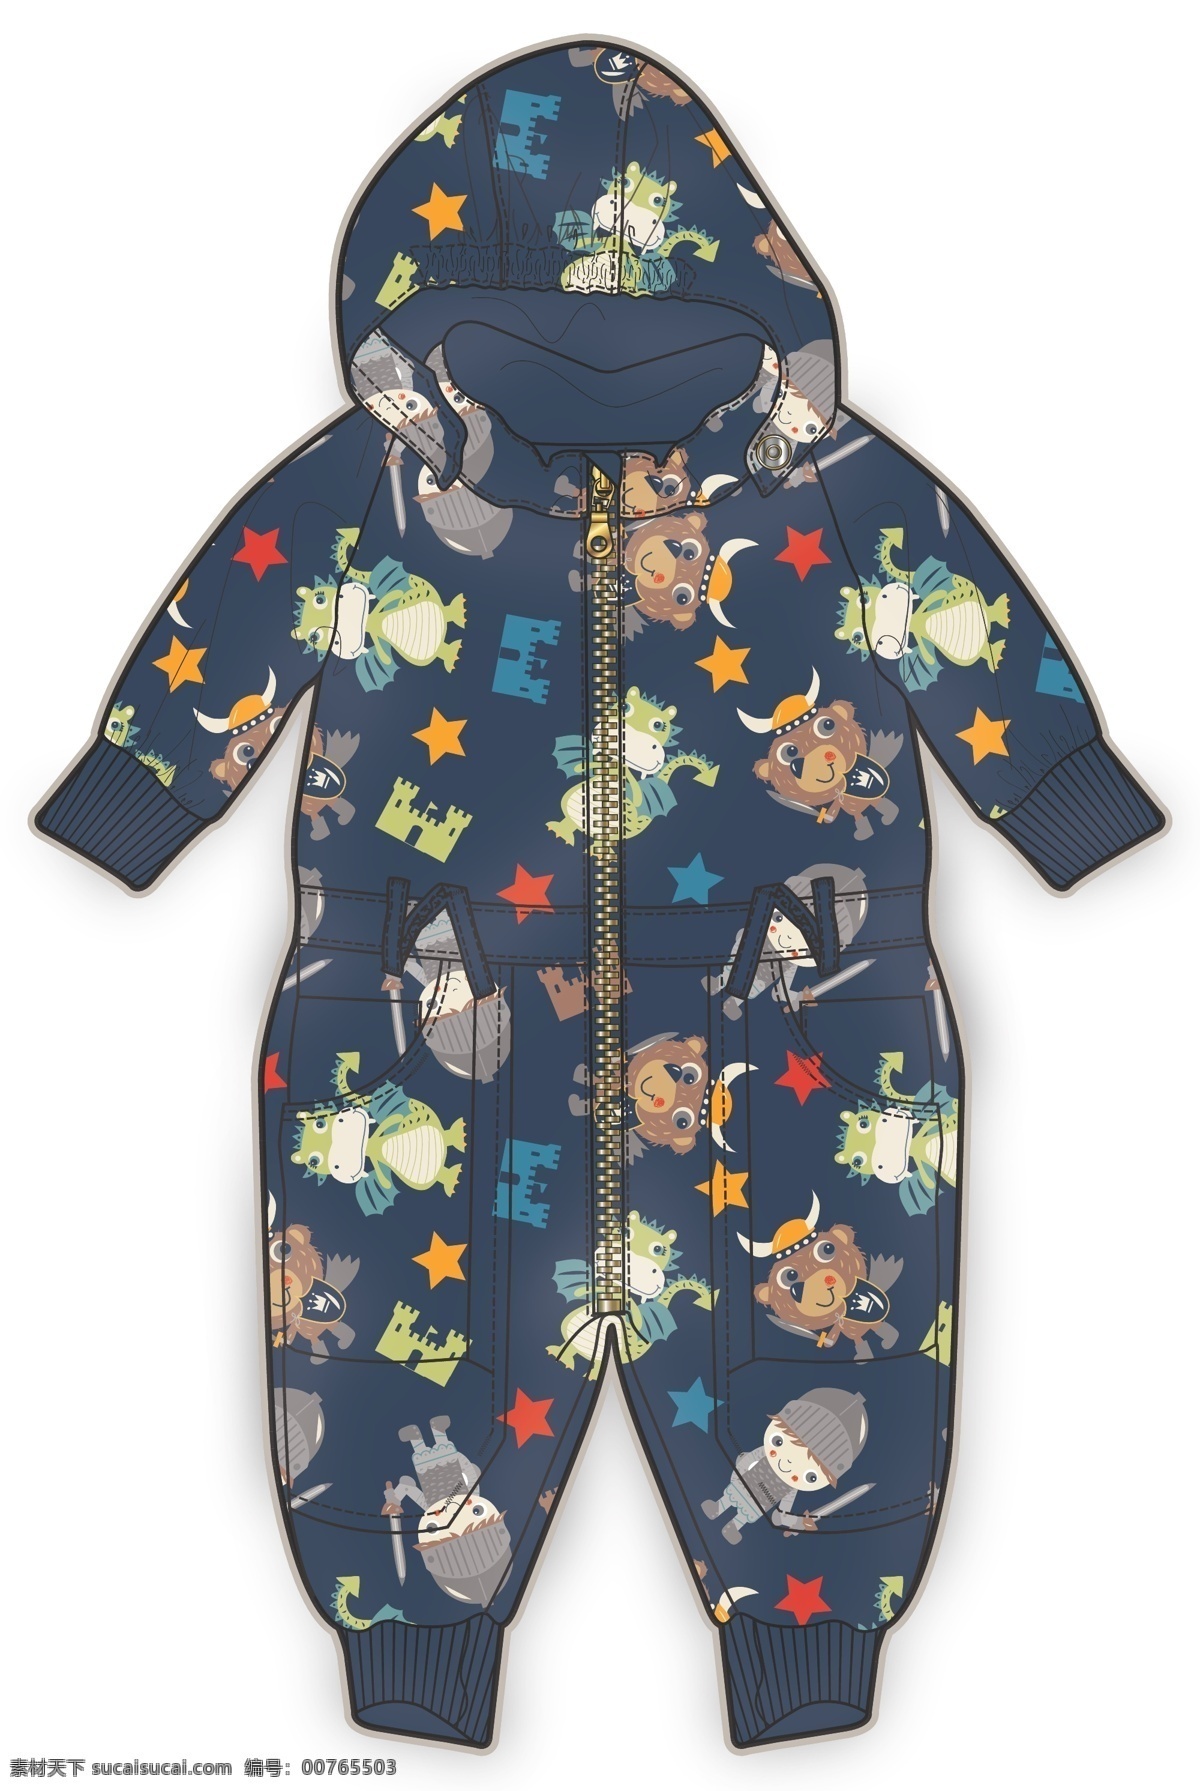 深蓝色 婴儿 服装 彩色 矢量 连体衣 王子 婴儿服装设计 可爱 手绘 保暖 线条